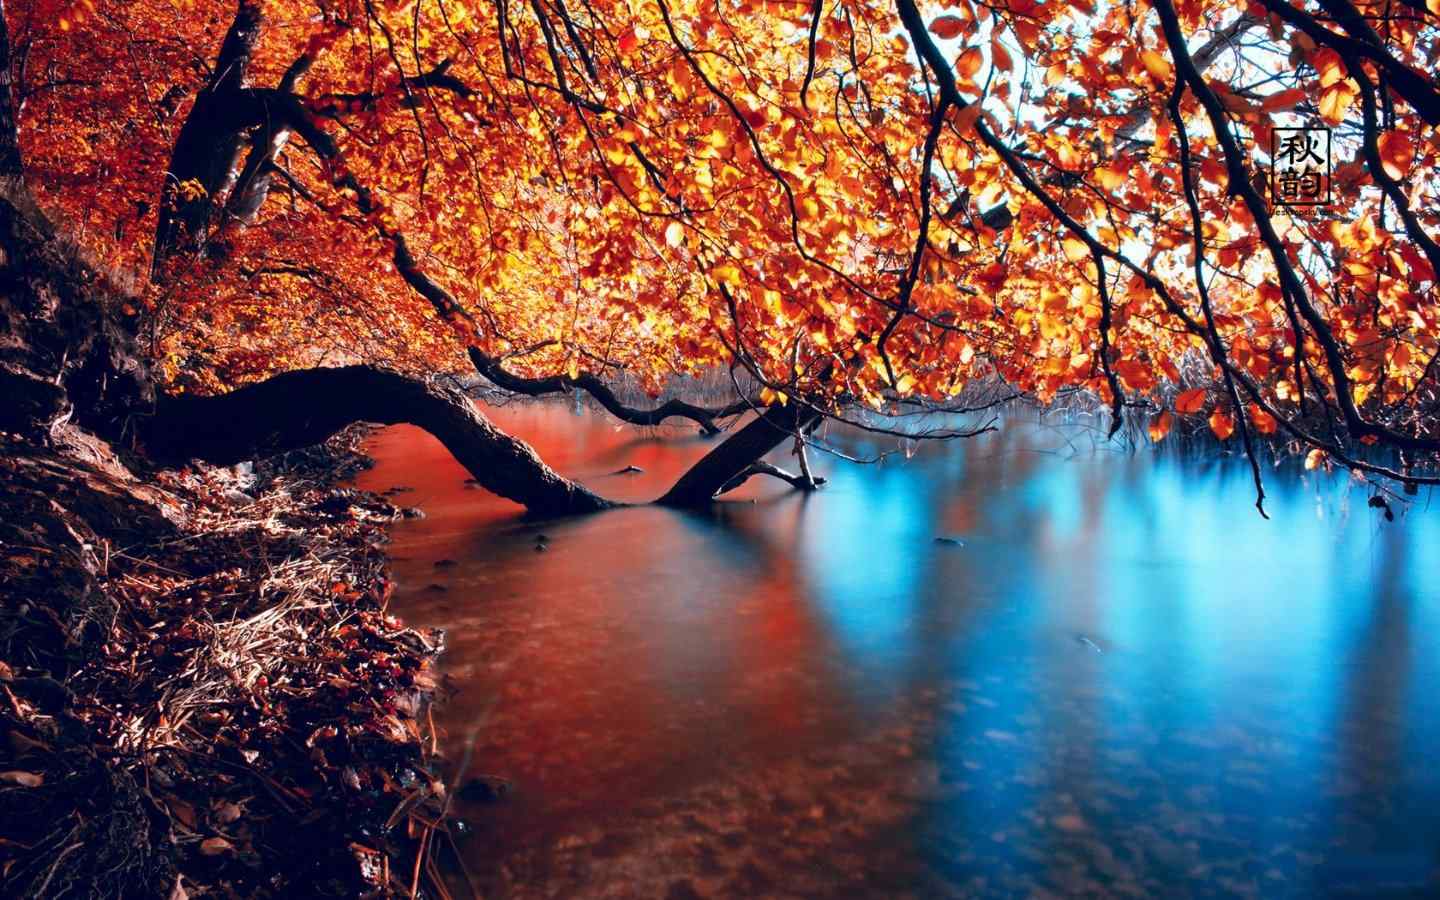 美丽的湖畔秋韵唯美摄影图片桌面壁纸